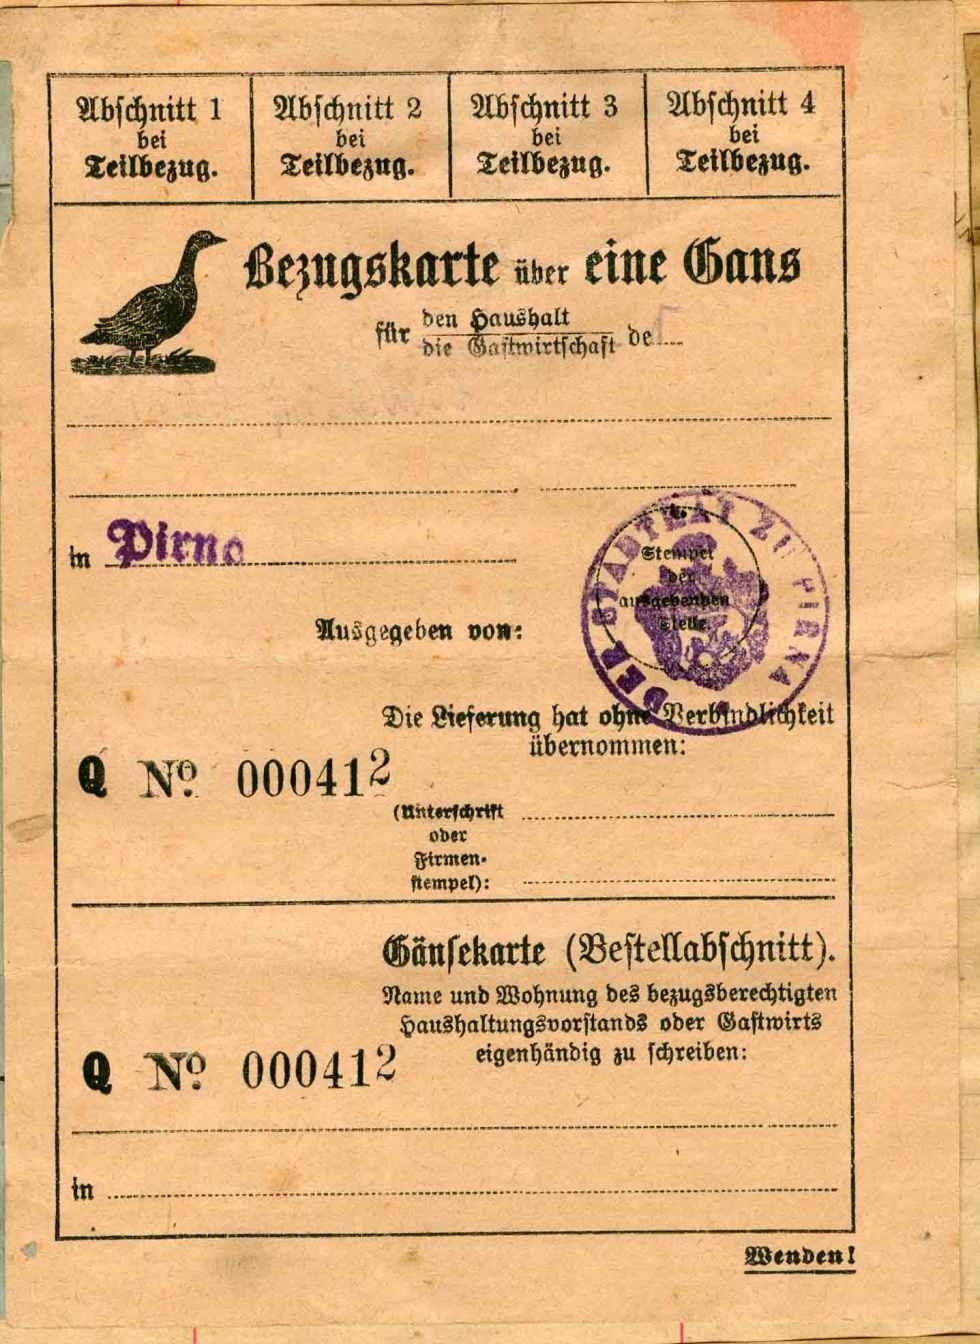 Lebensmittelkarte oder Bezugskarte über eine Gans, Stadtrat Pirna, 1914-1918, 1. Weltkrieg (Museum Weißenfels - Schloss Neu-Augustusburg CC BY-NC-SA)